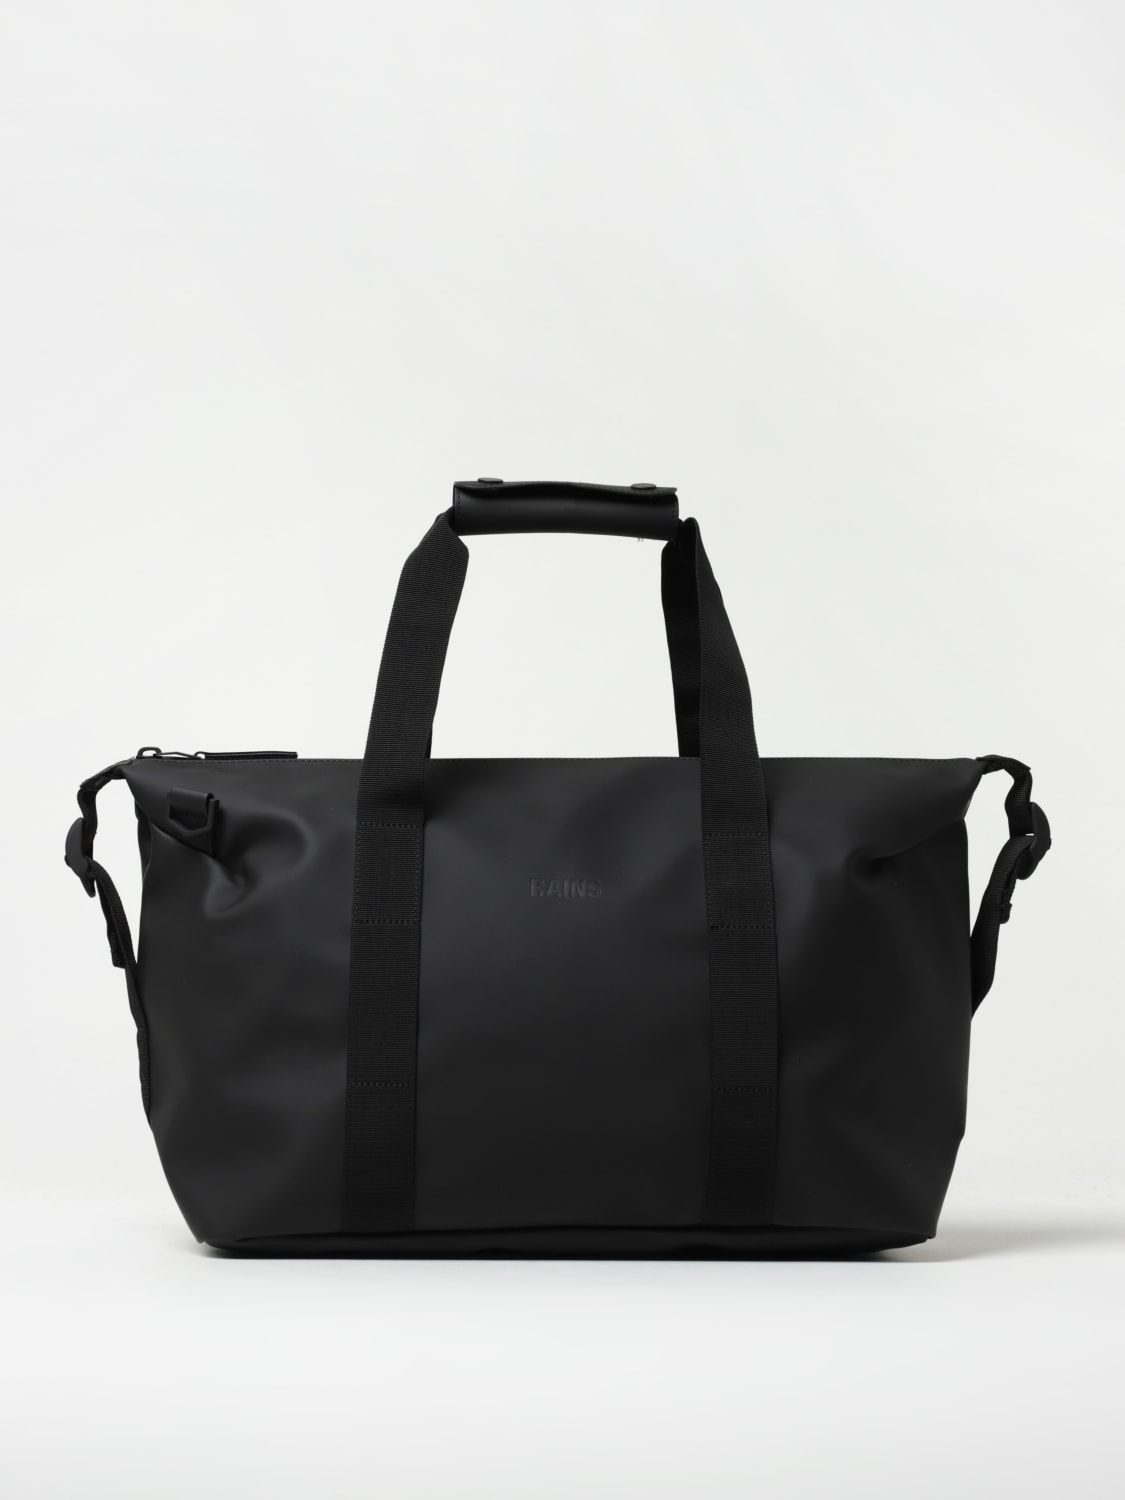 Men's Weekend Bags - Buy Weekend Bags Online